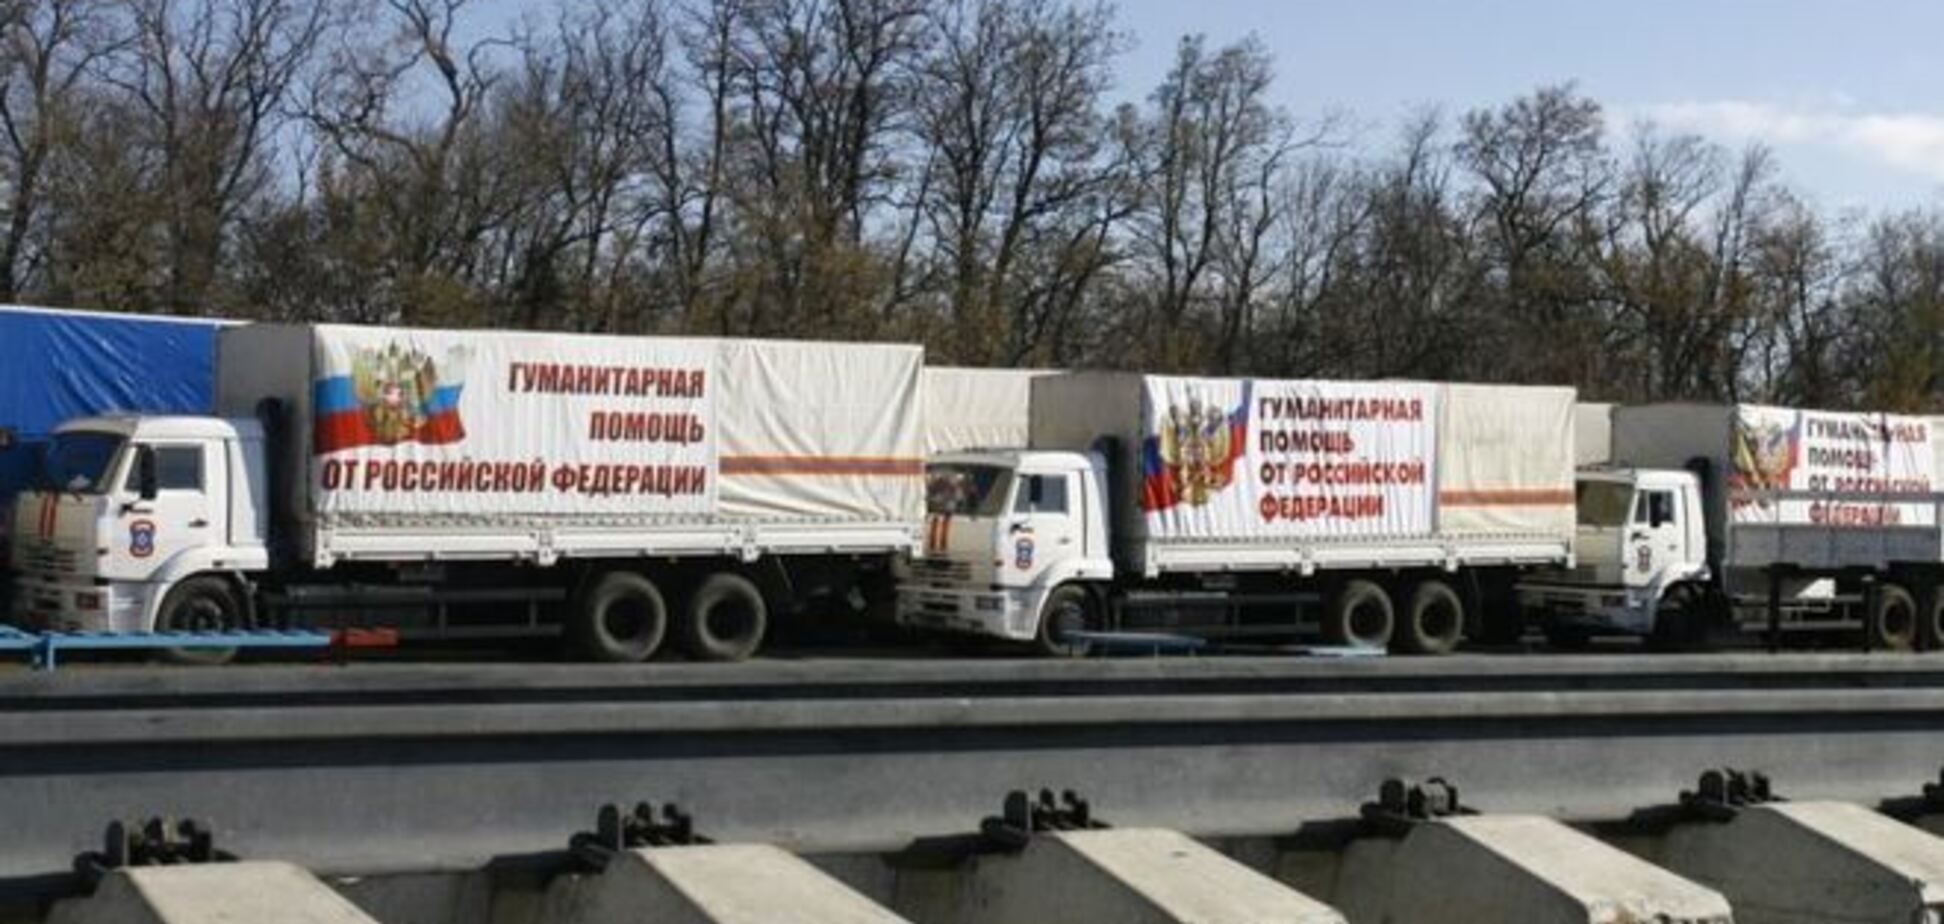 Российские СМИ поведали о содержимом нового 'гуманитарного конвоя'